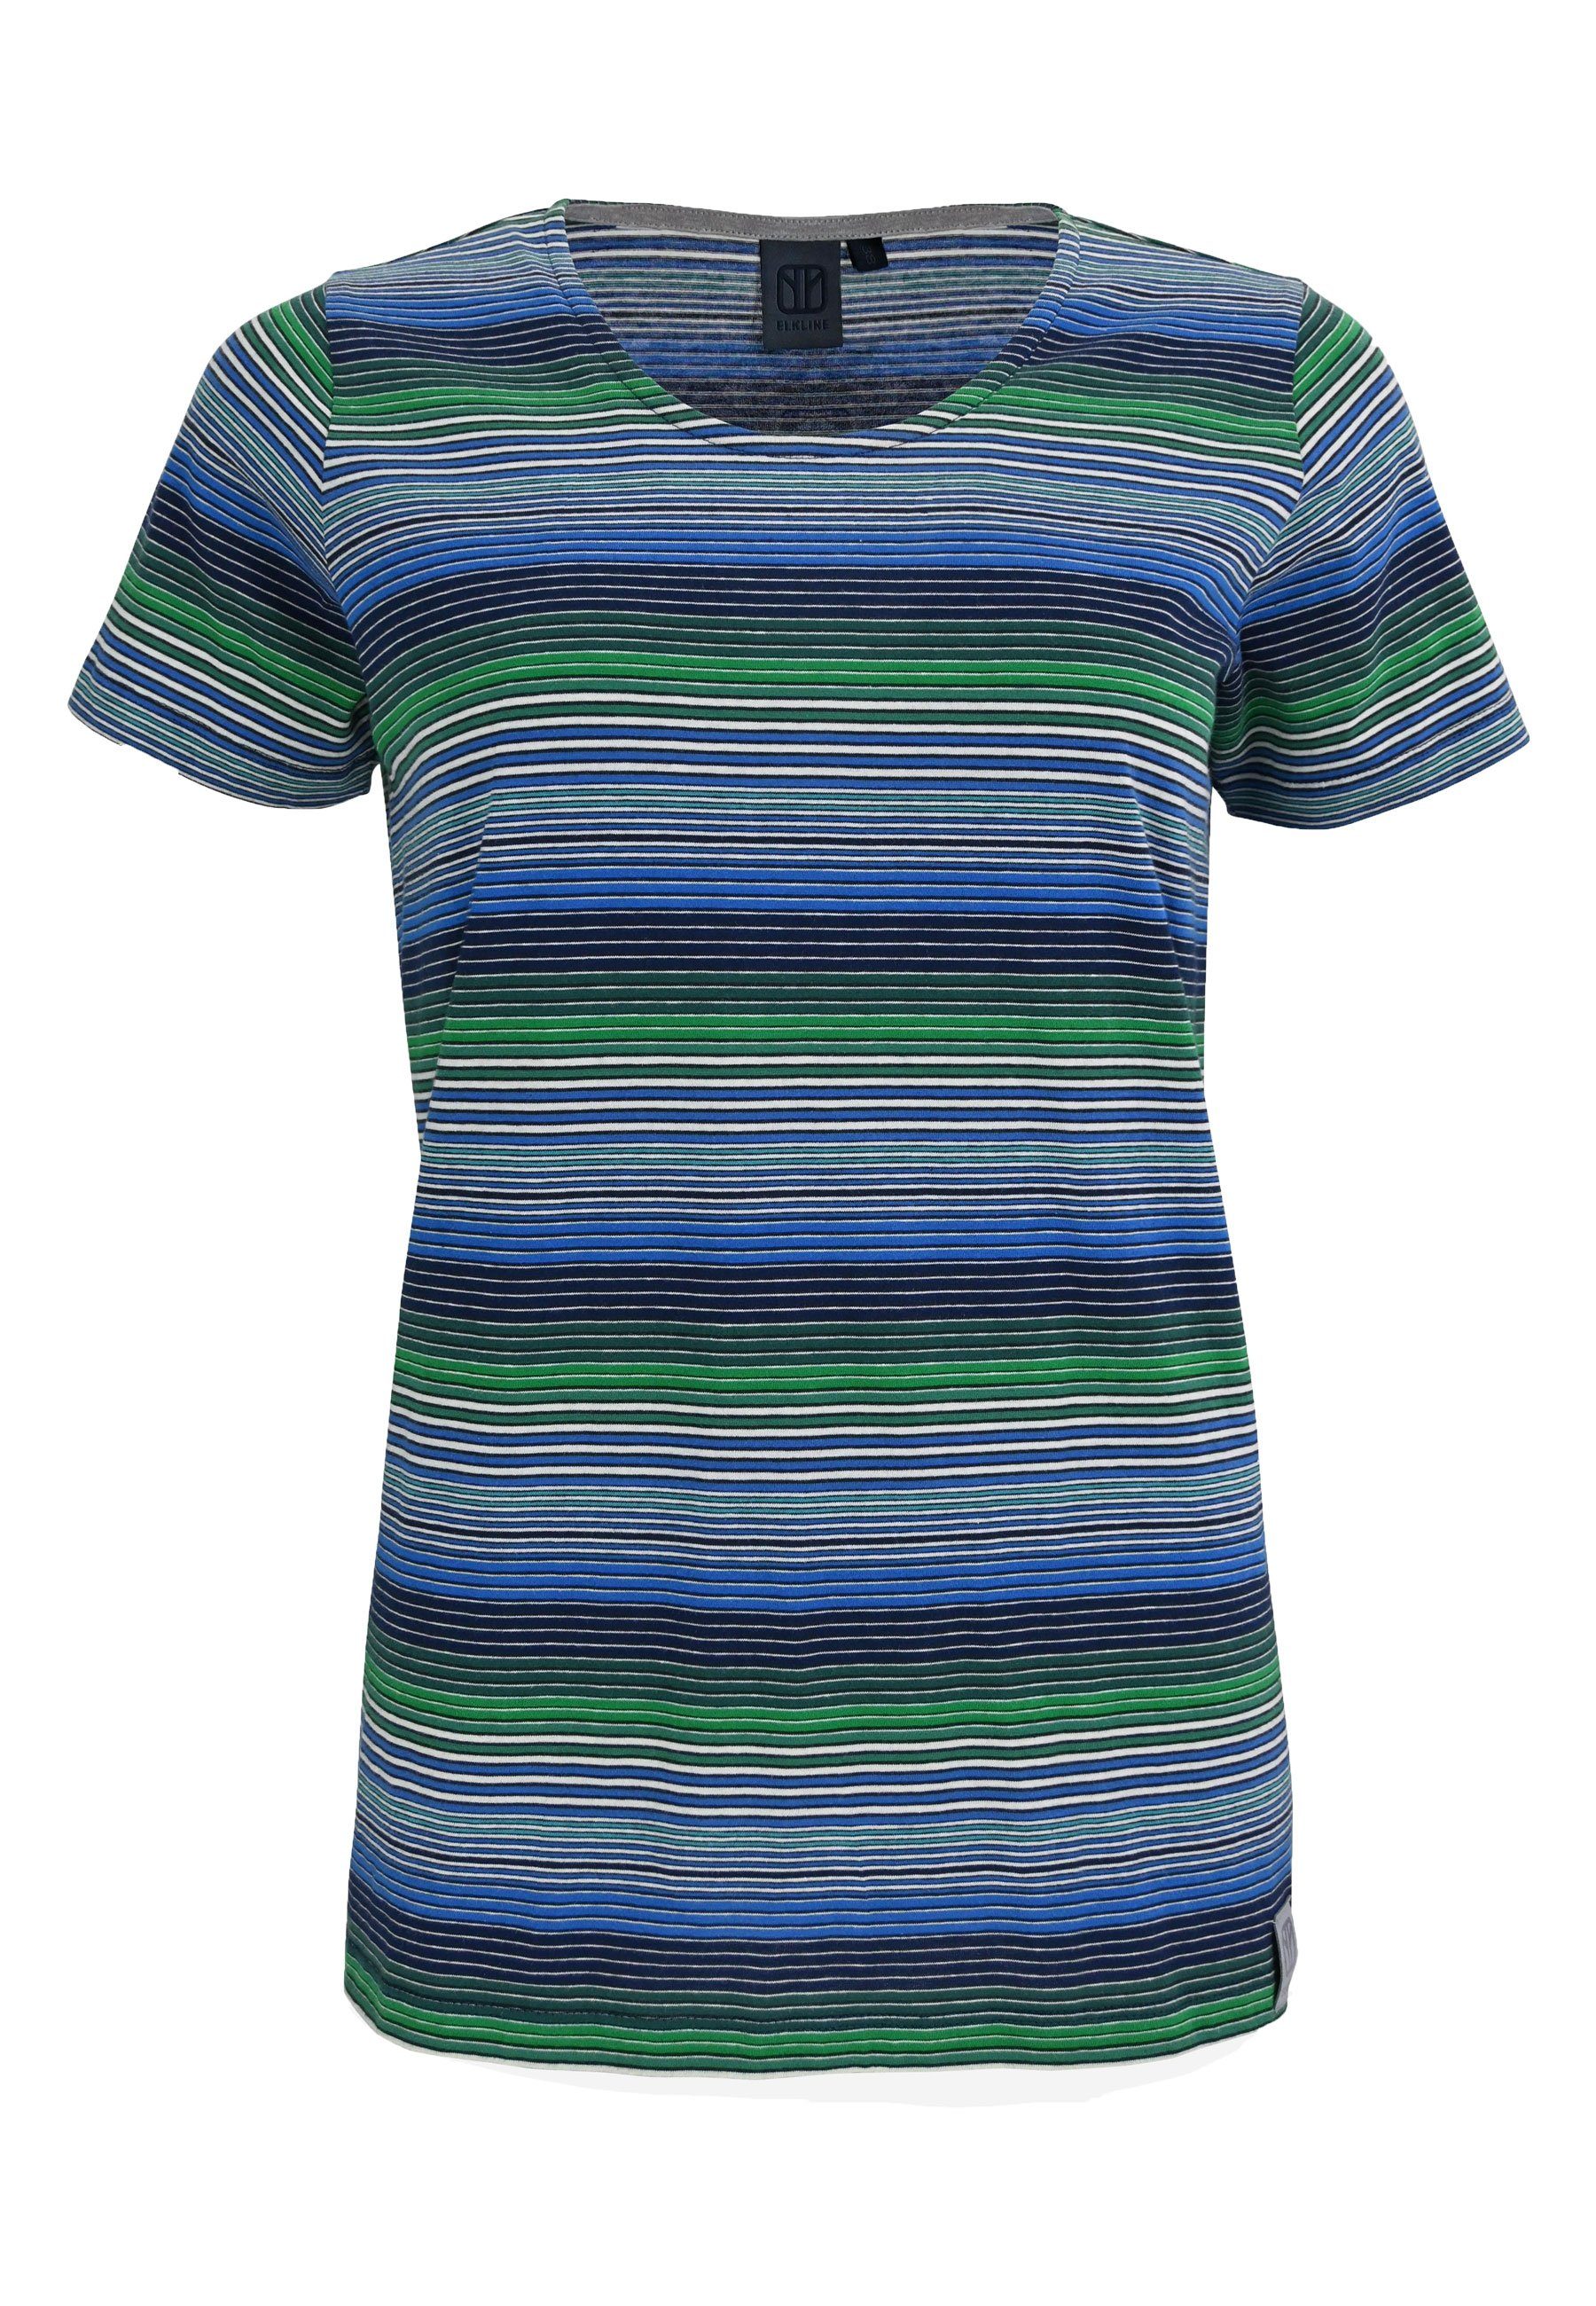 Elkline Candystriped - bunt green gestreift blue T-Shirt